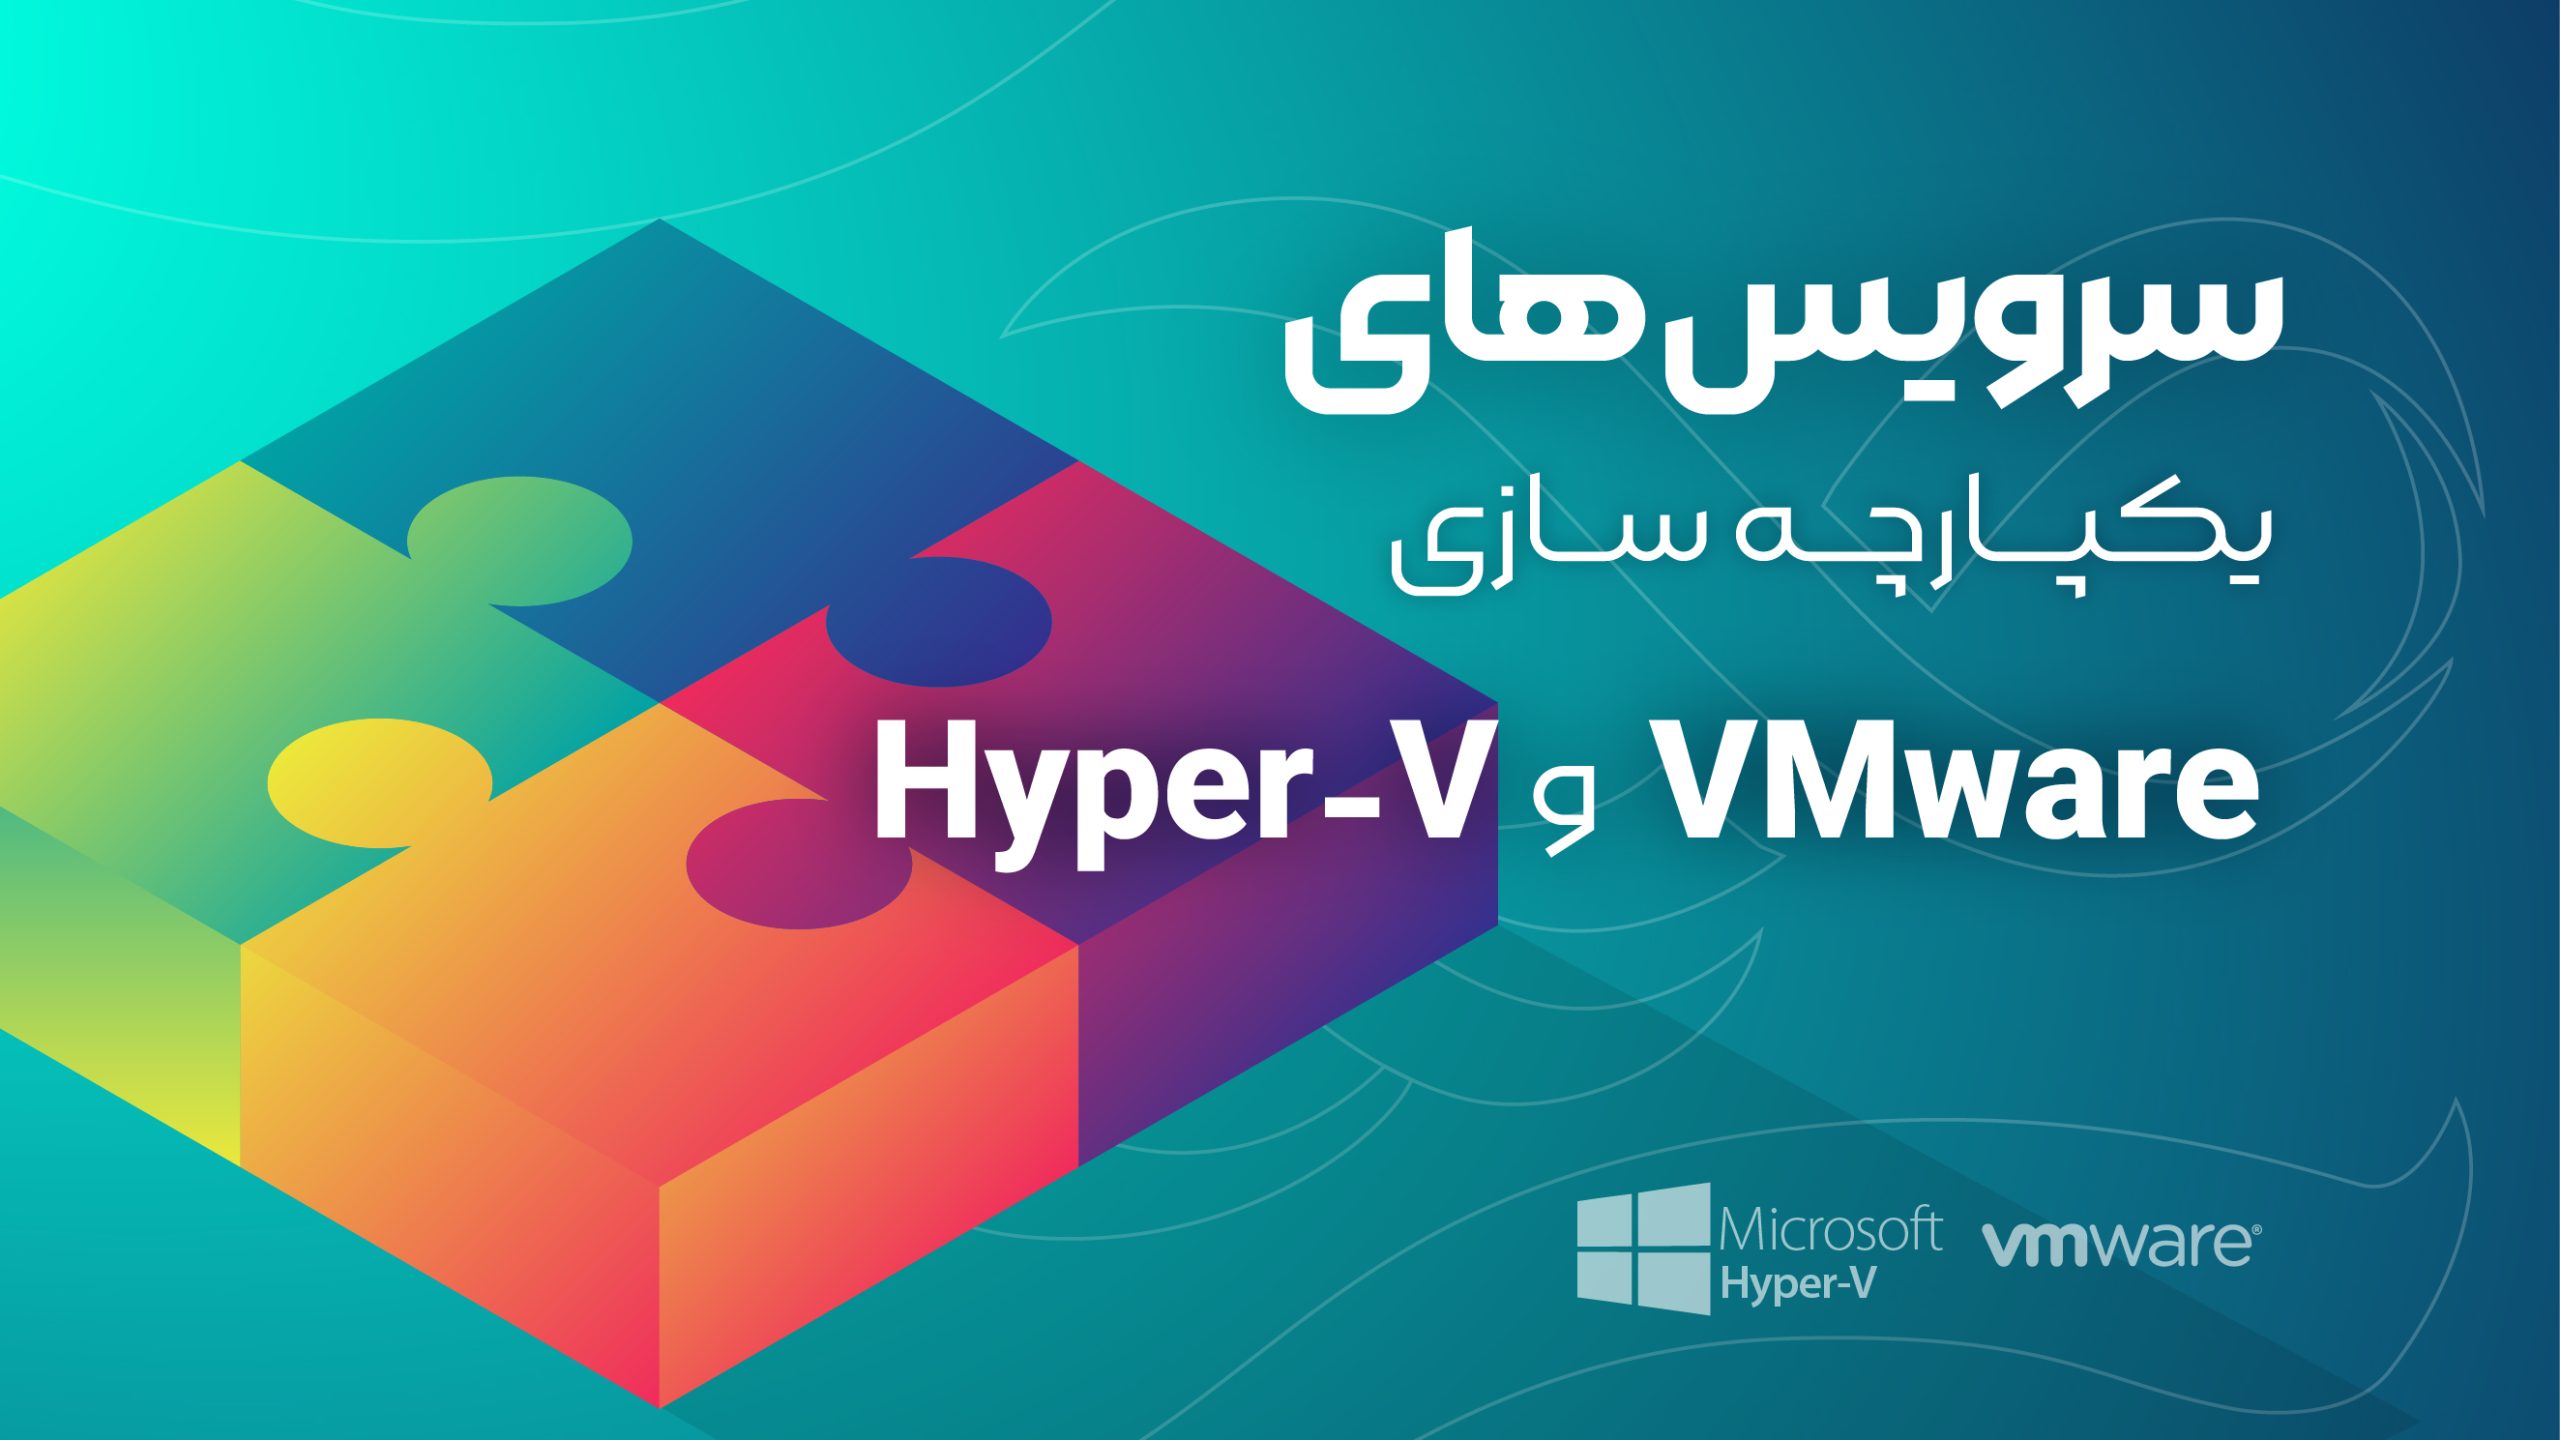 سرویس های یکپارچه سازی هایپروایزور های Hyper-V و VMware